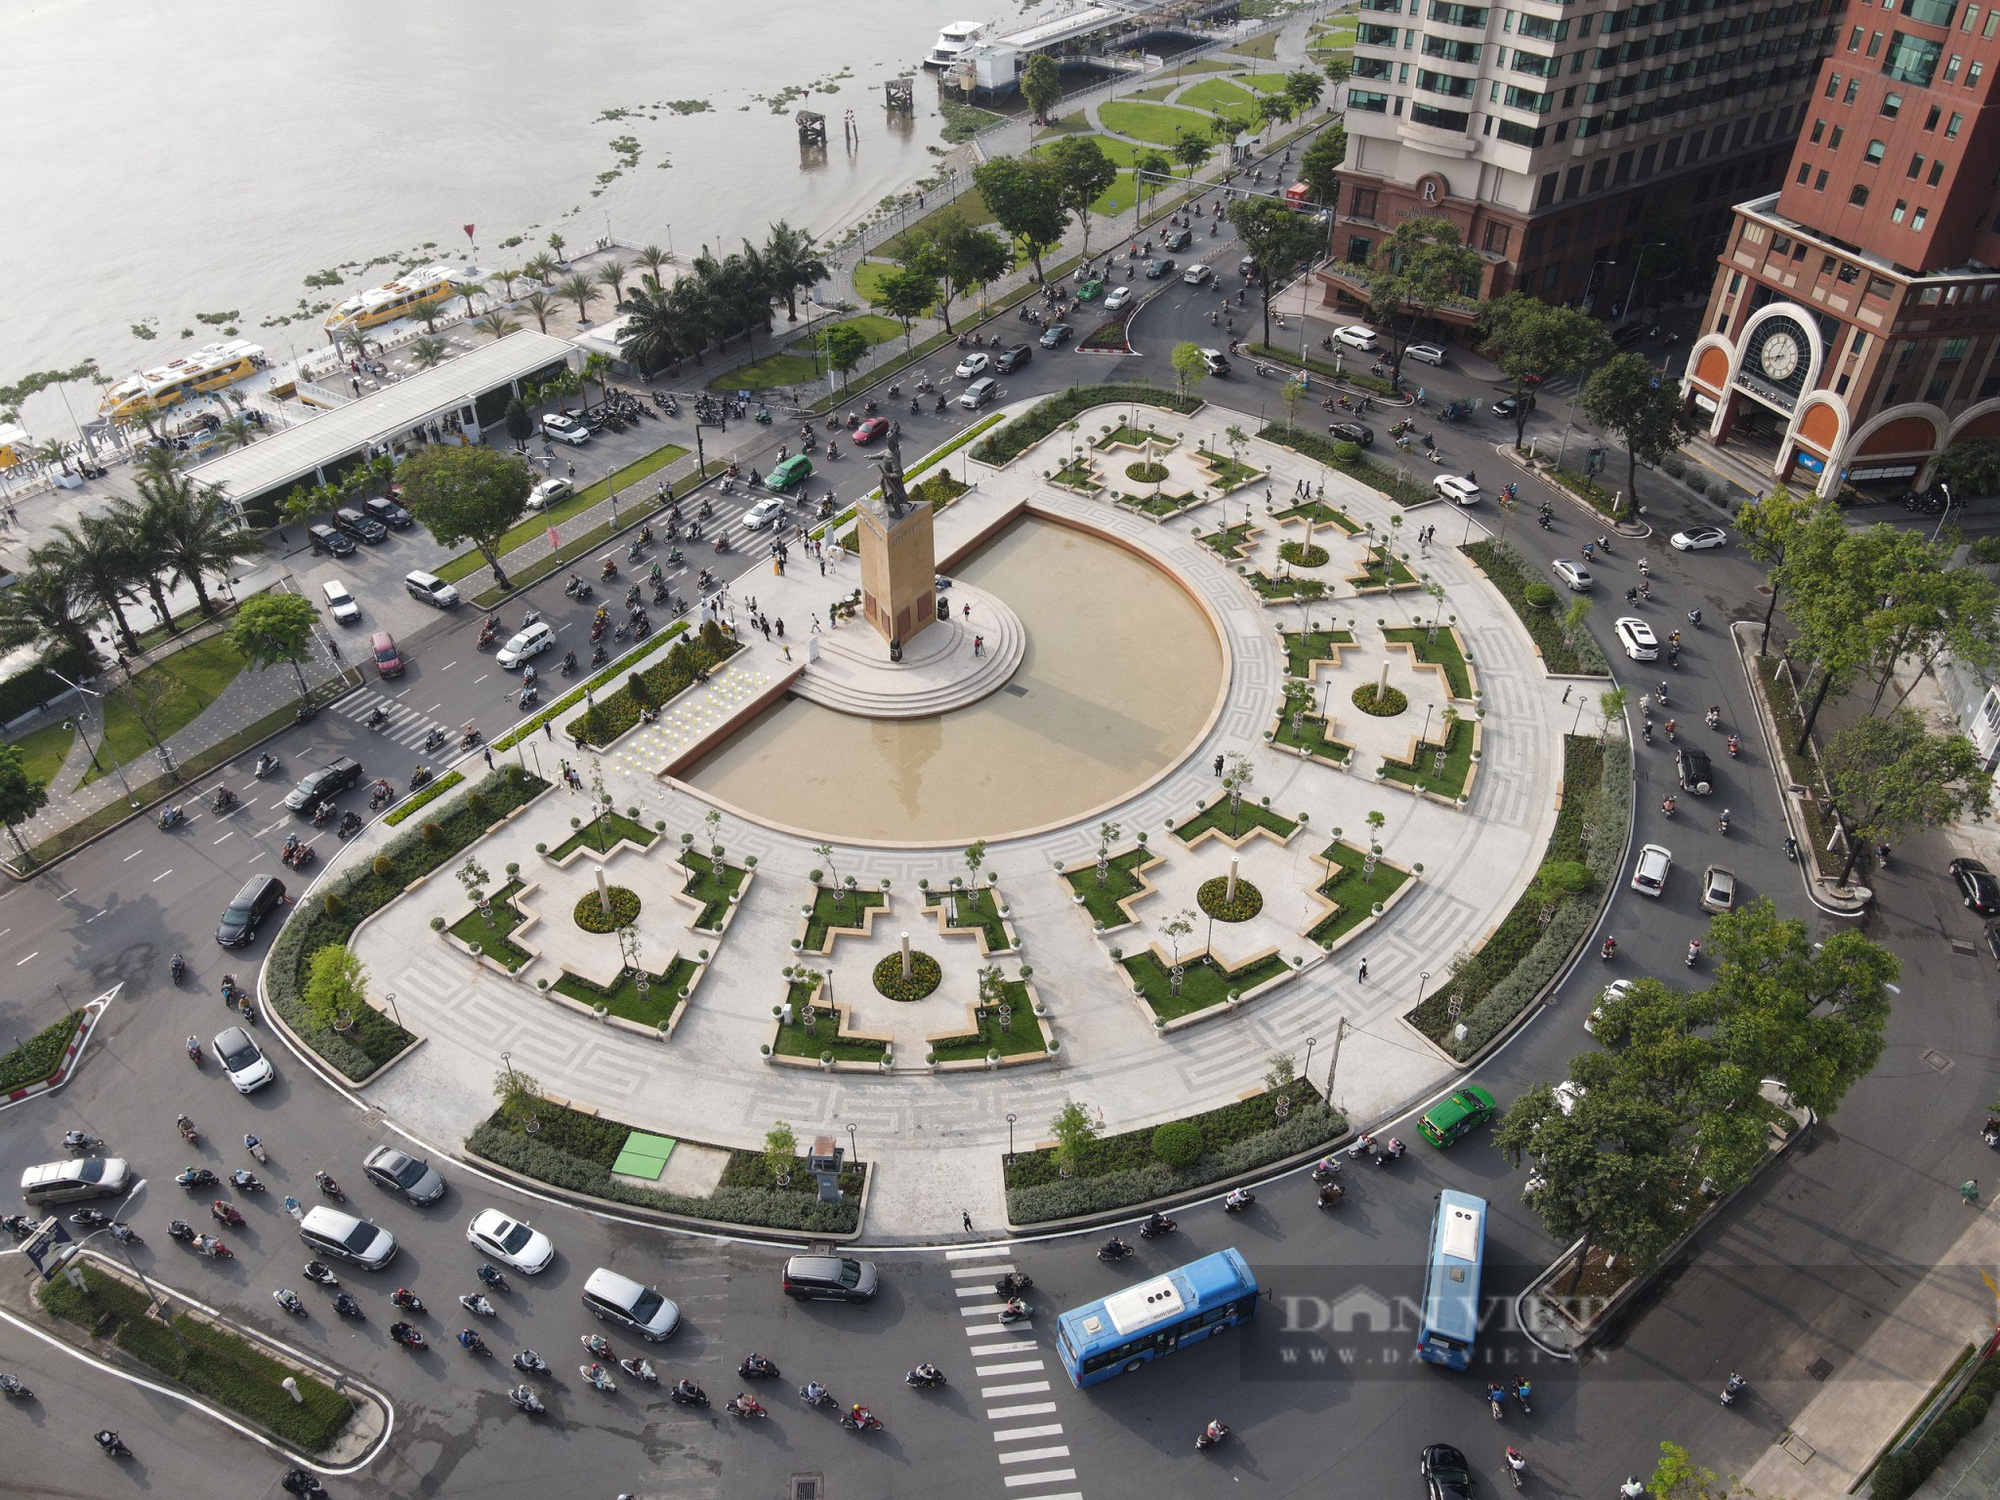 Khánh thành công viên Mê Linh bến Bạch Đằng: Tạo không gian văn hóa Sài Gòn 300 năm trên bến du thuyền - Ảnh 6.